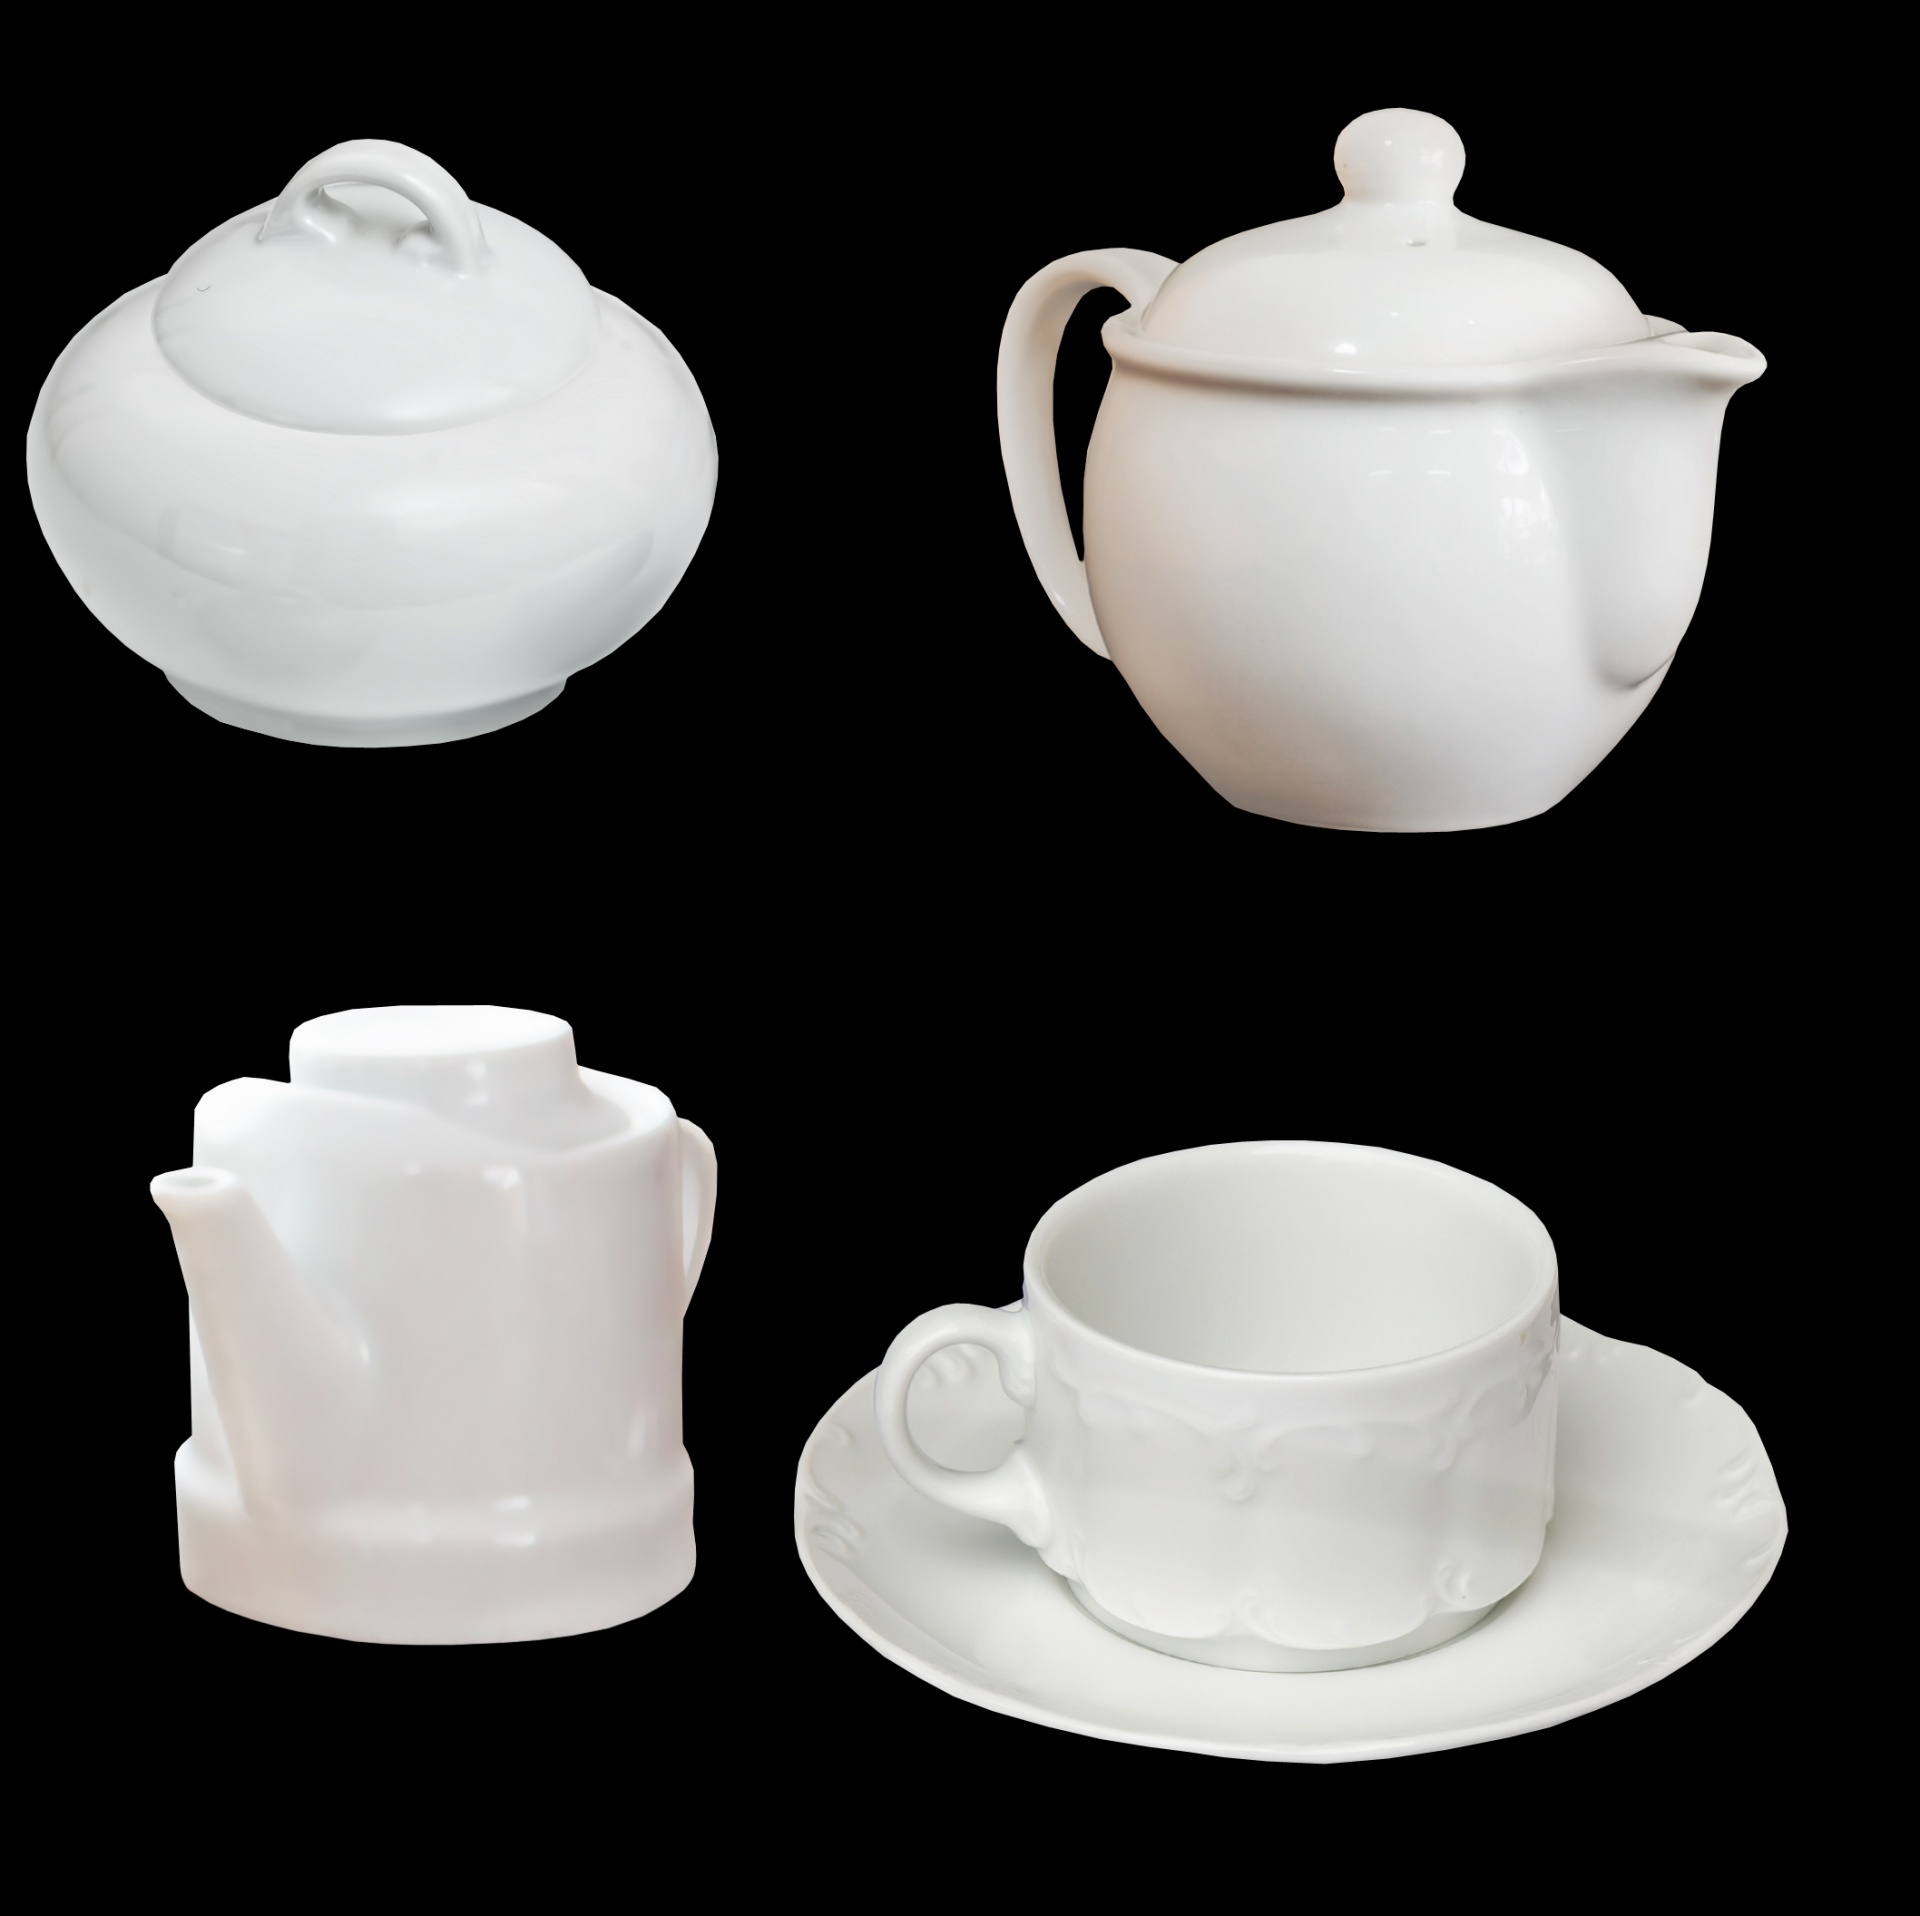 teapot white teapot white free photo